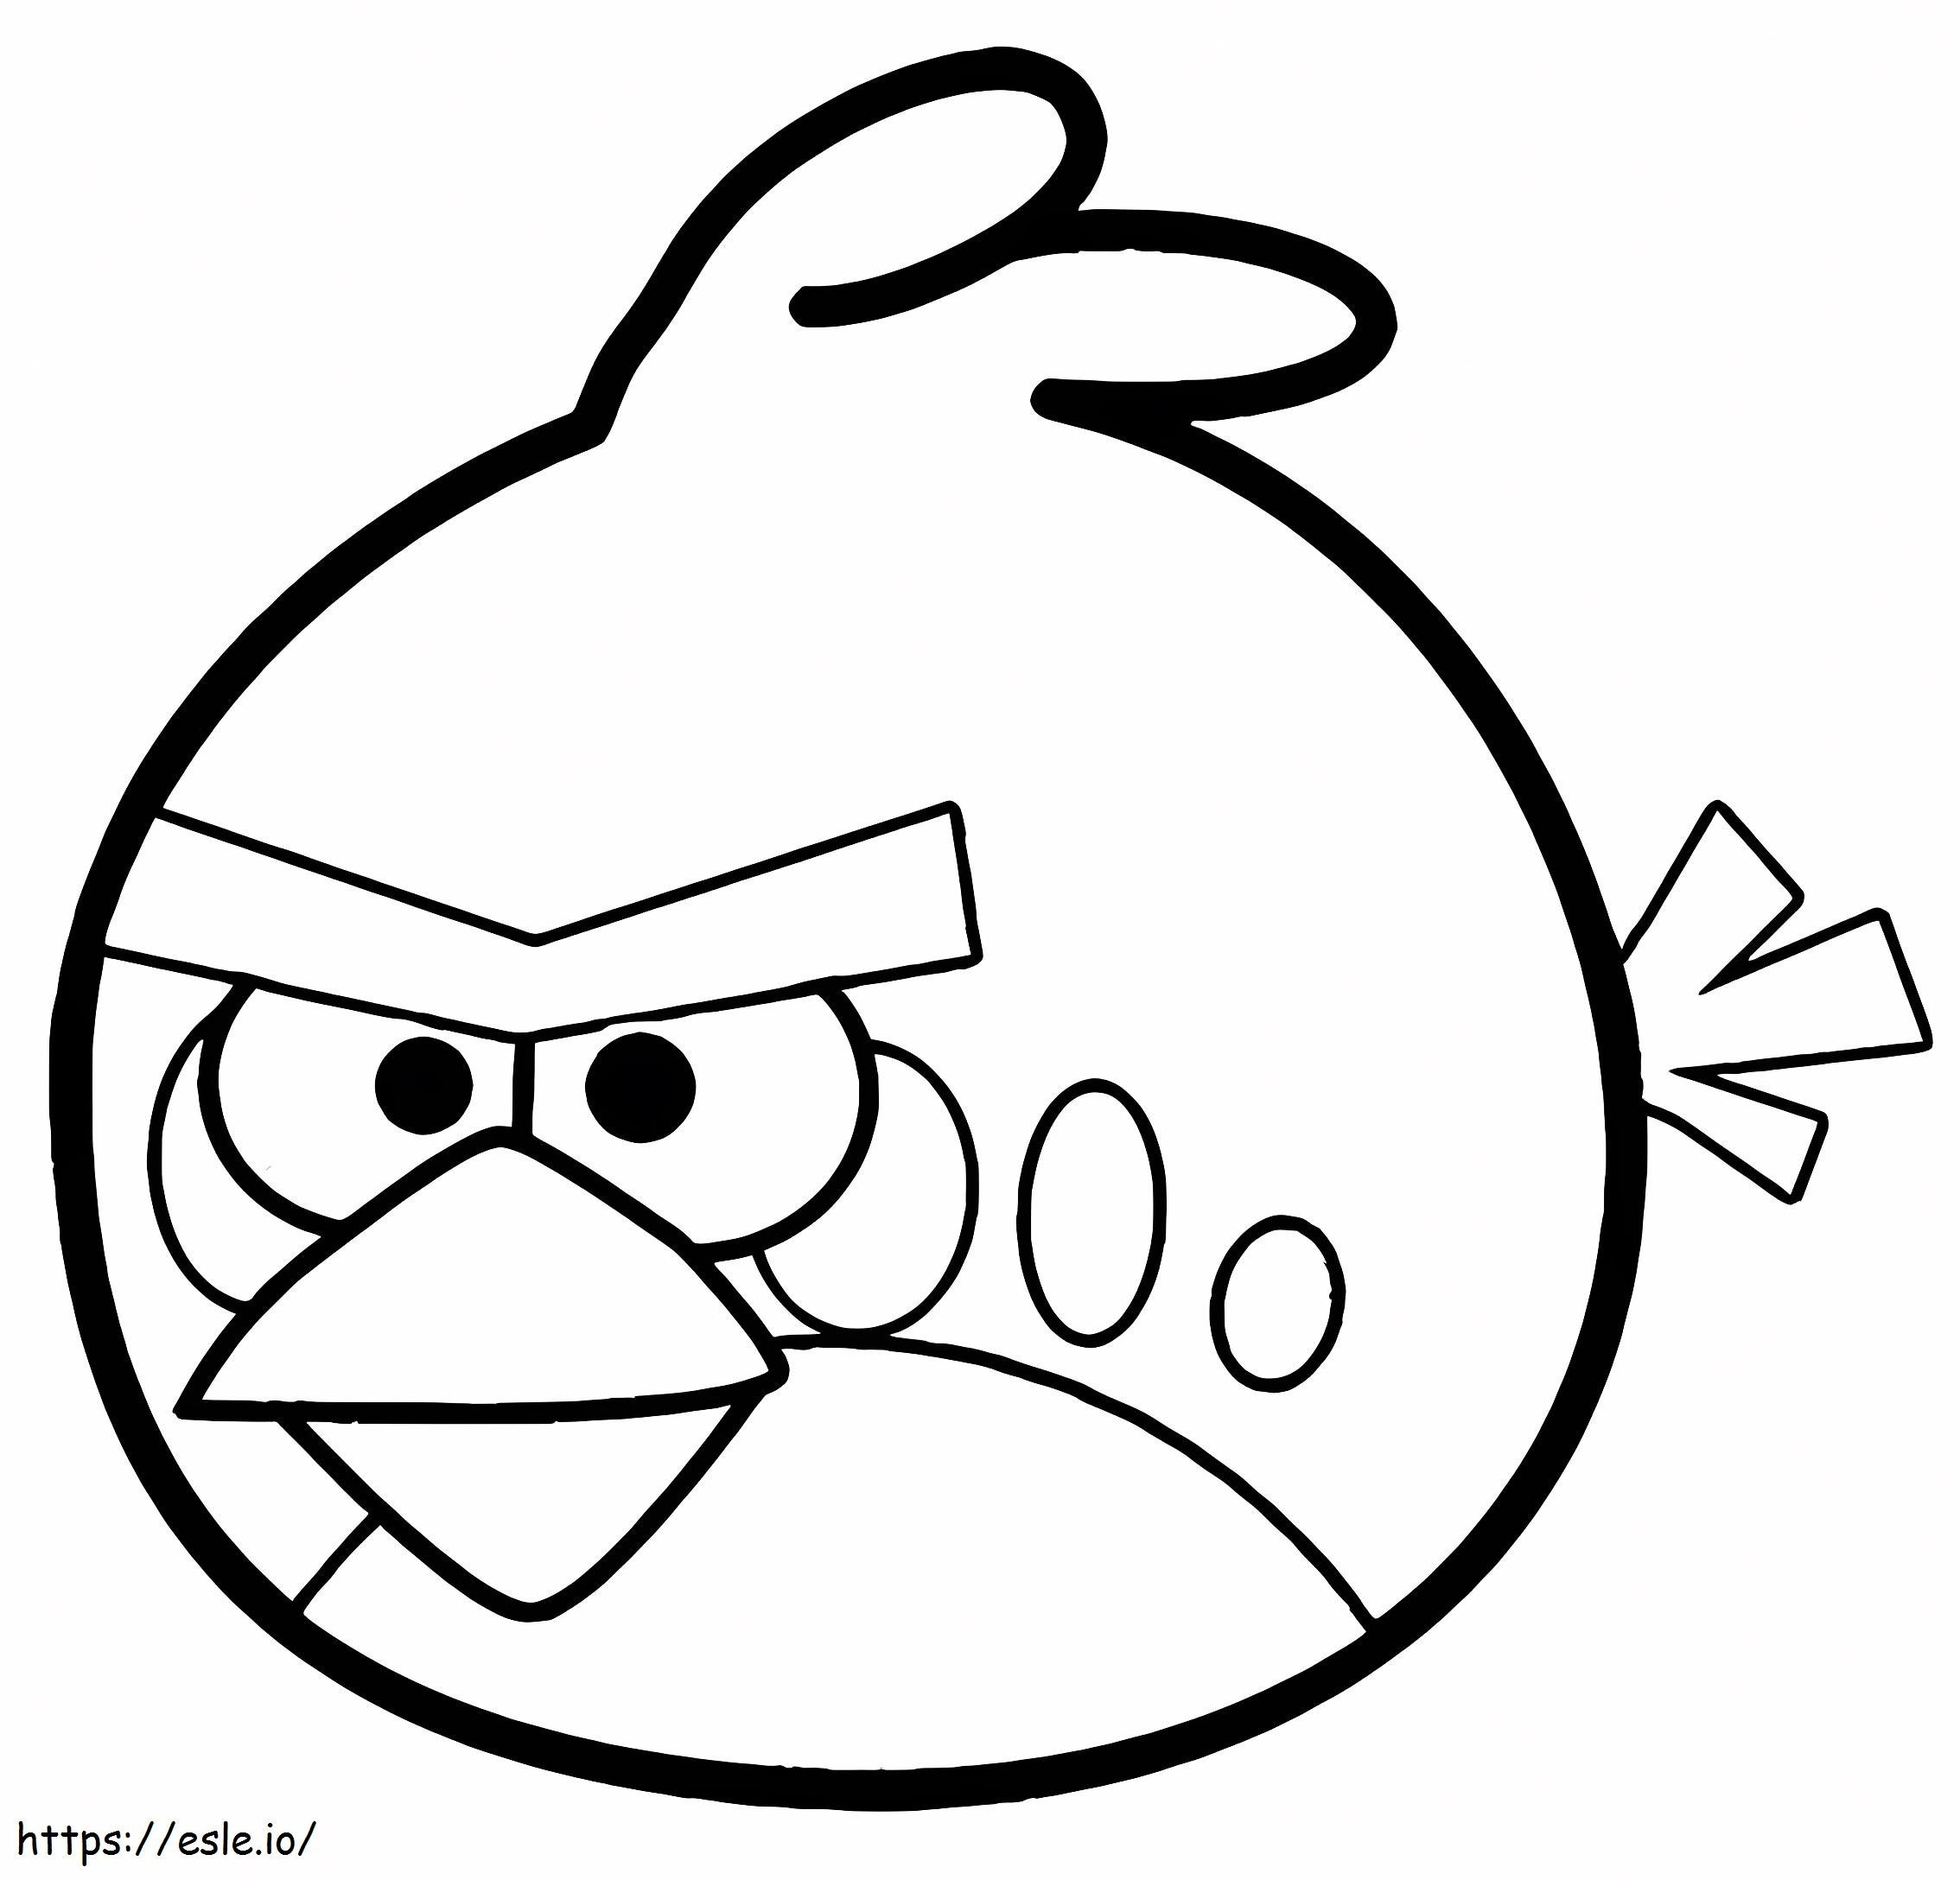 Vaikuttava Angry Birds värityskuva